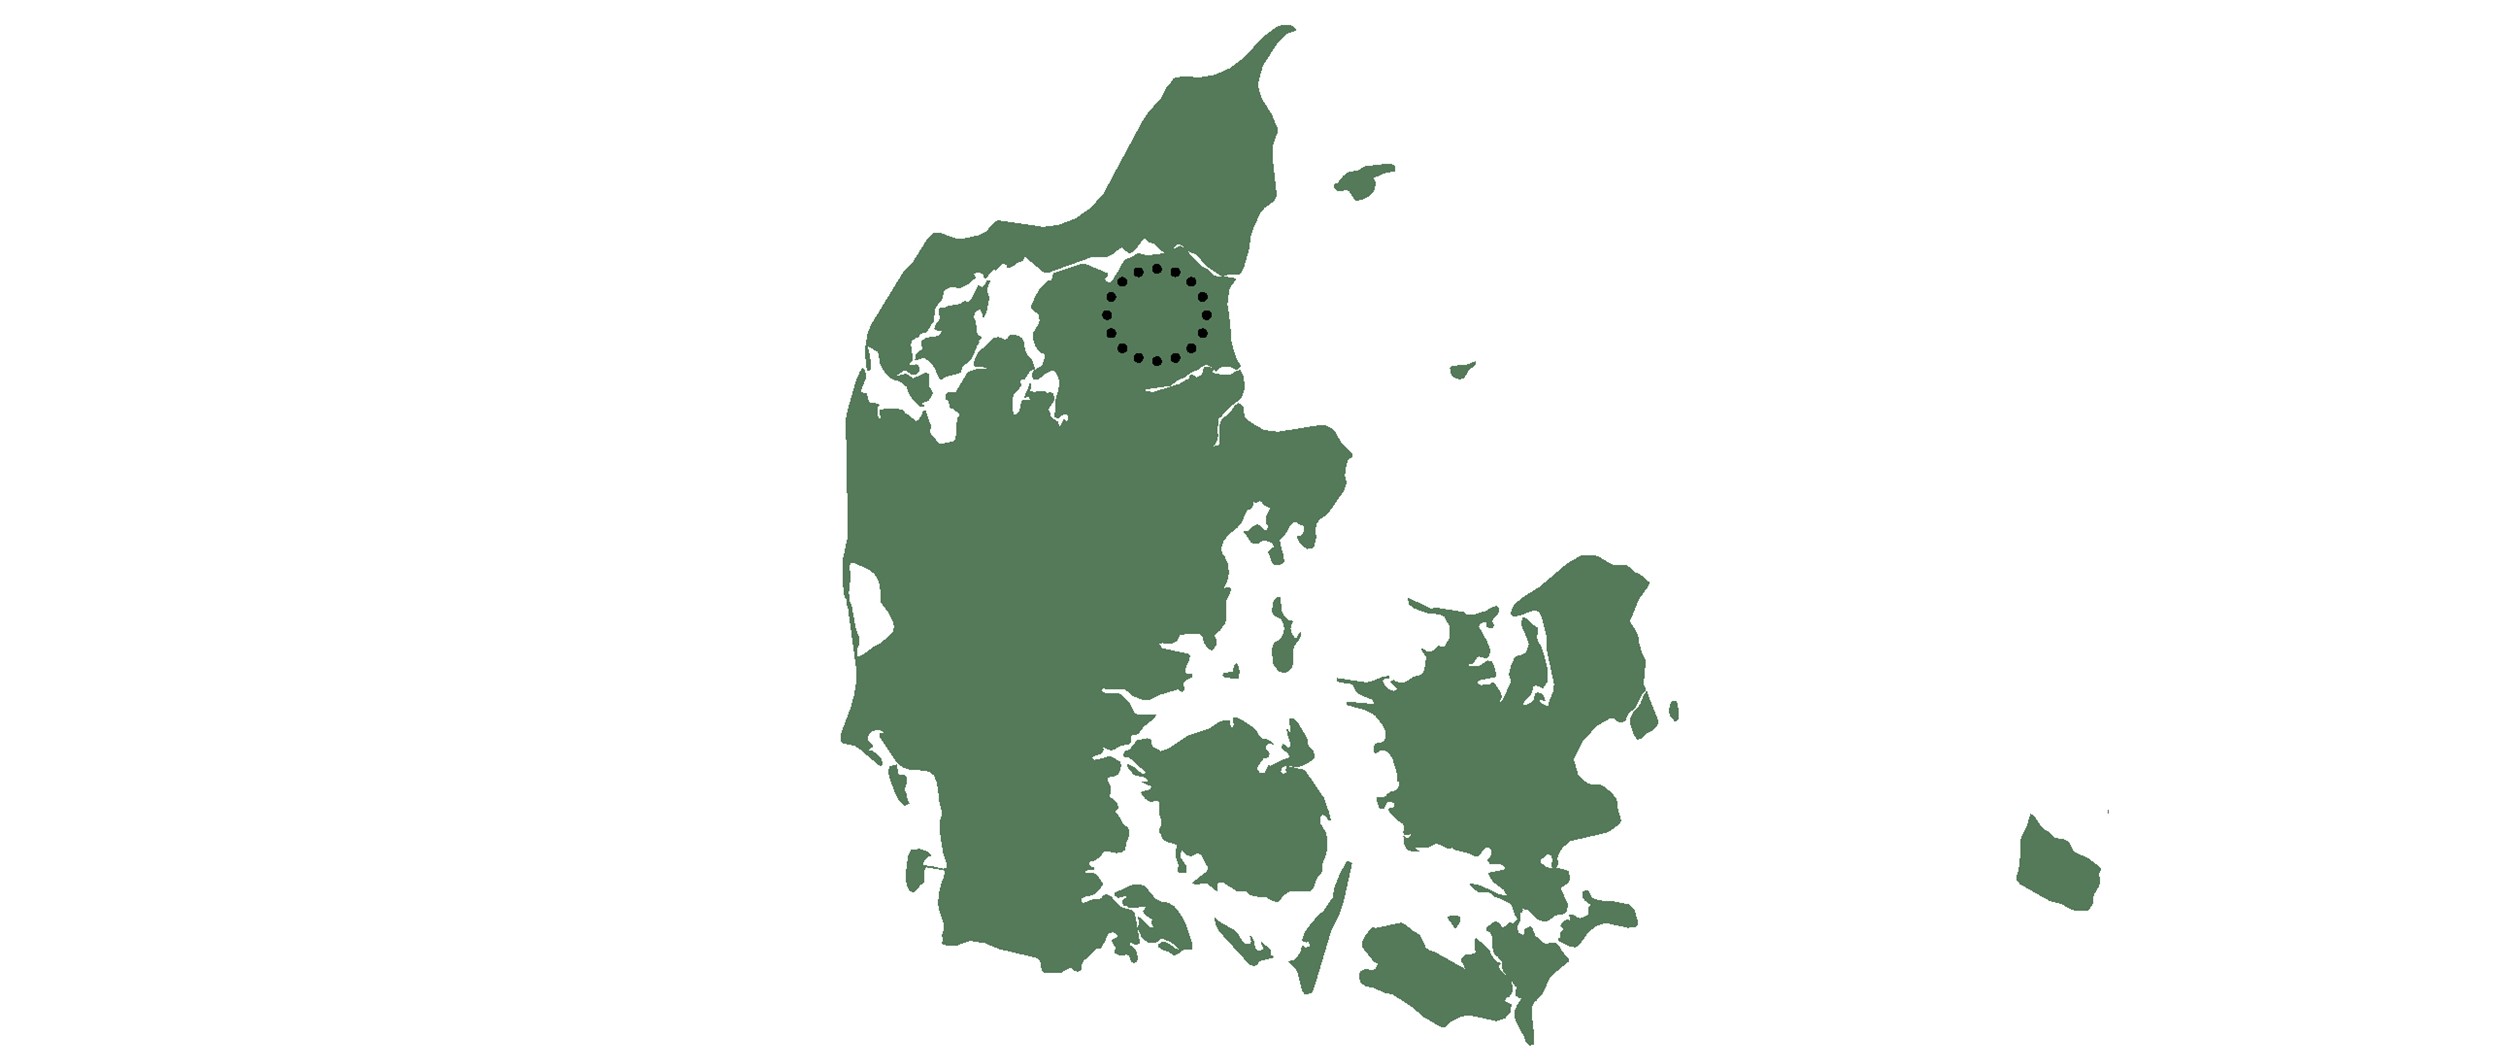 Projektet er beliggende i Støvring lidt syd for Aalborg.